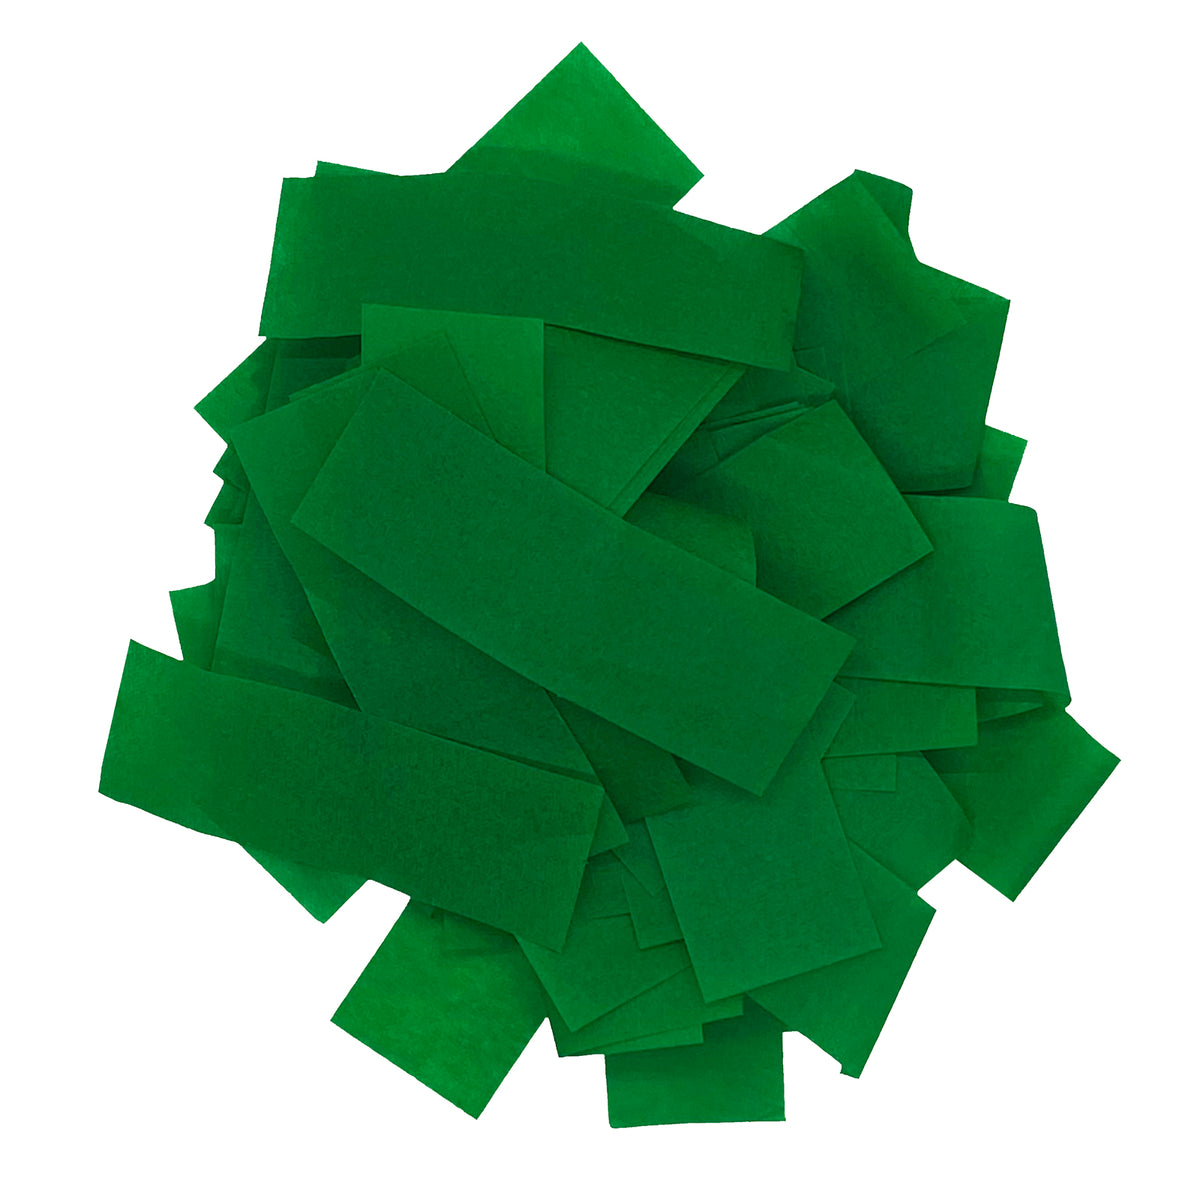 Green Tissue Confetti by Ultimate Confetti